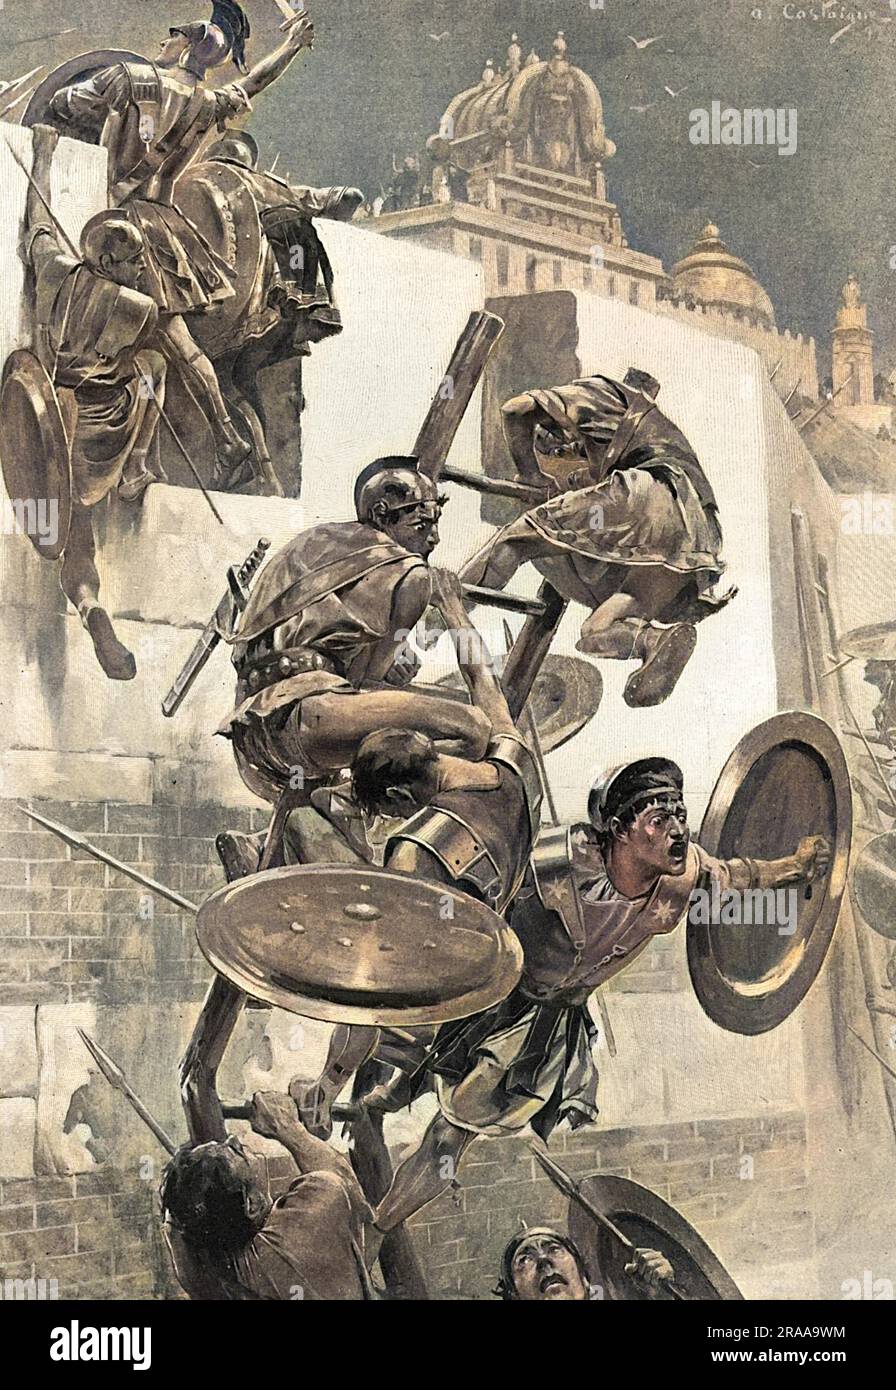 Soldaten, die von Alexander dem Großen begeistert waren, schwärmen eine Leiter hoch, um die befestigten Stadtmauern der Mallianer anzugreifen. Die Leiter bricht unter ihrem Gewicht und lässt ihren Anführer offen für Angriffe auf die Stadtmauern, aber anstatt zurück in Sicherheit zu springen, kämpft Alexander weiter, in die Mitte der Feinde: Ein Beispiel für seine Tapferkeit und Eile. Datum: 326 v. Chr Stockfoto